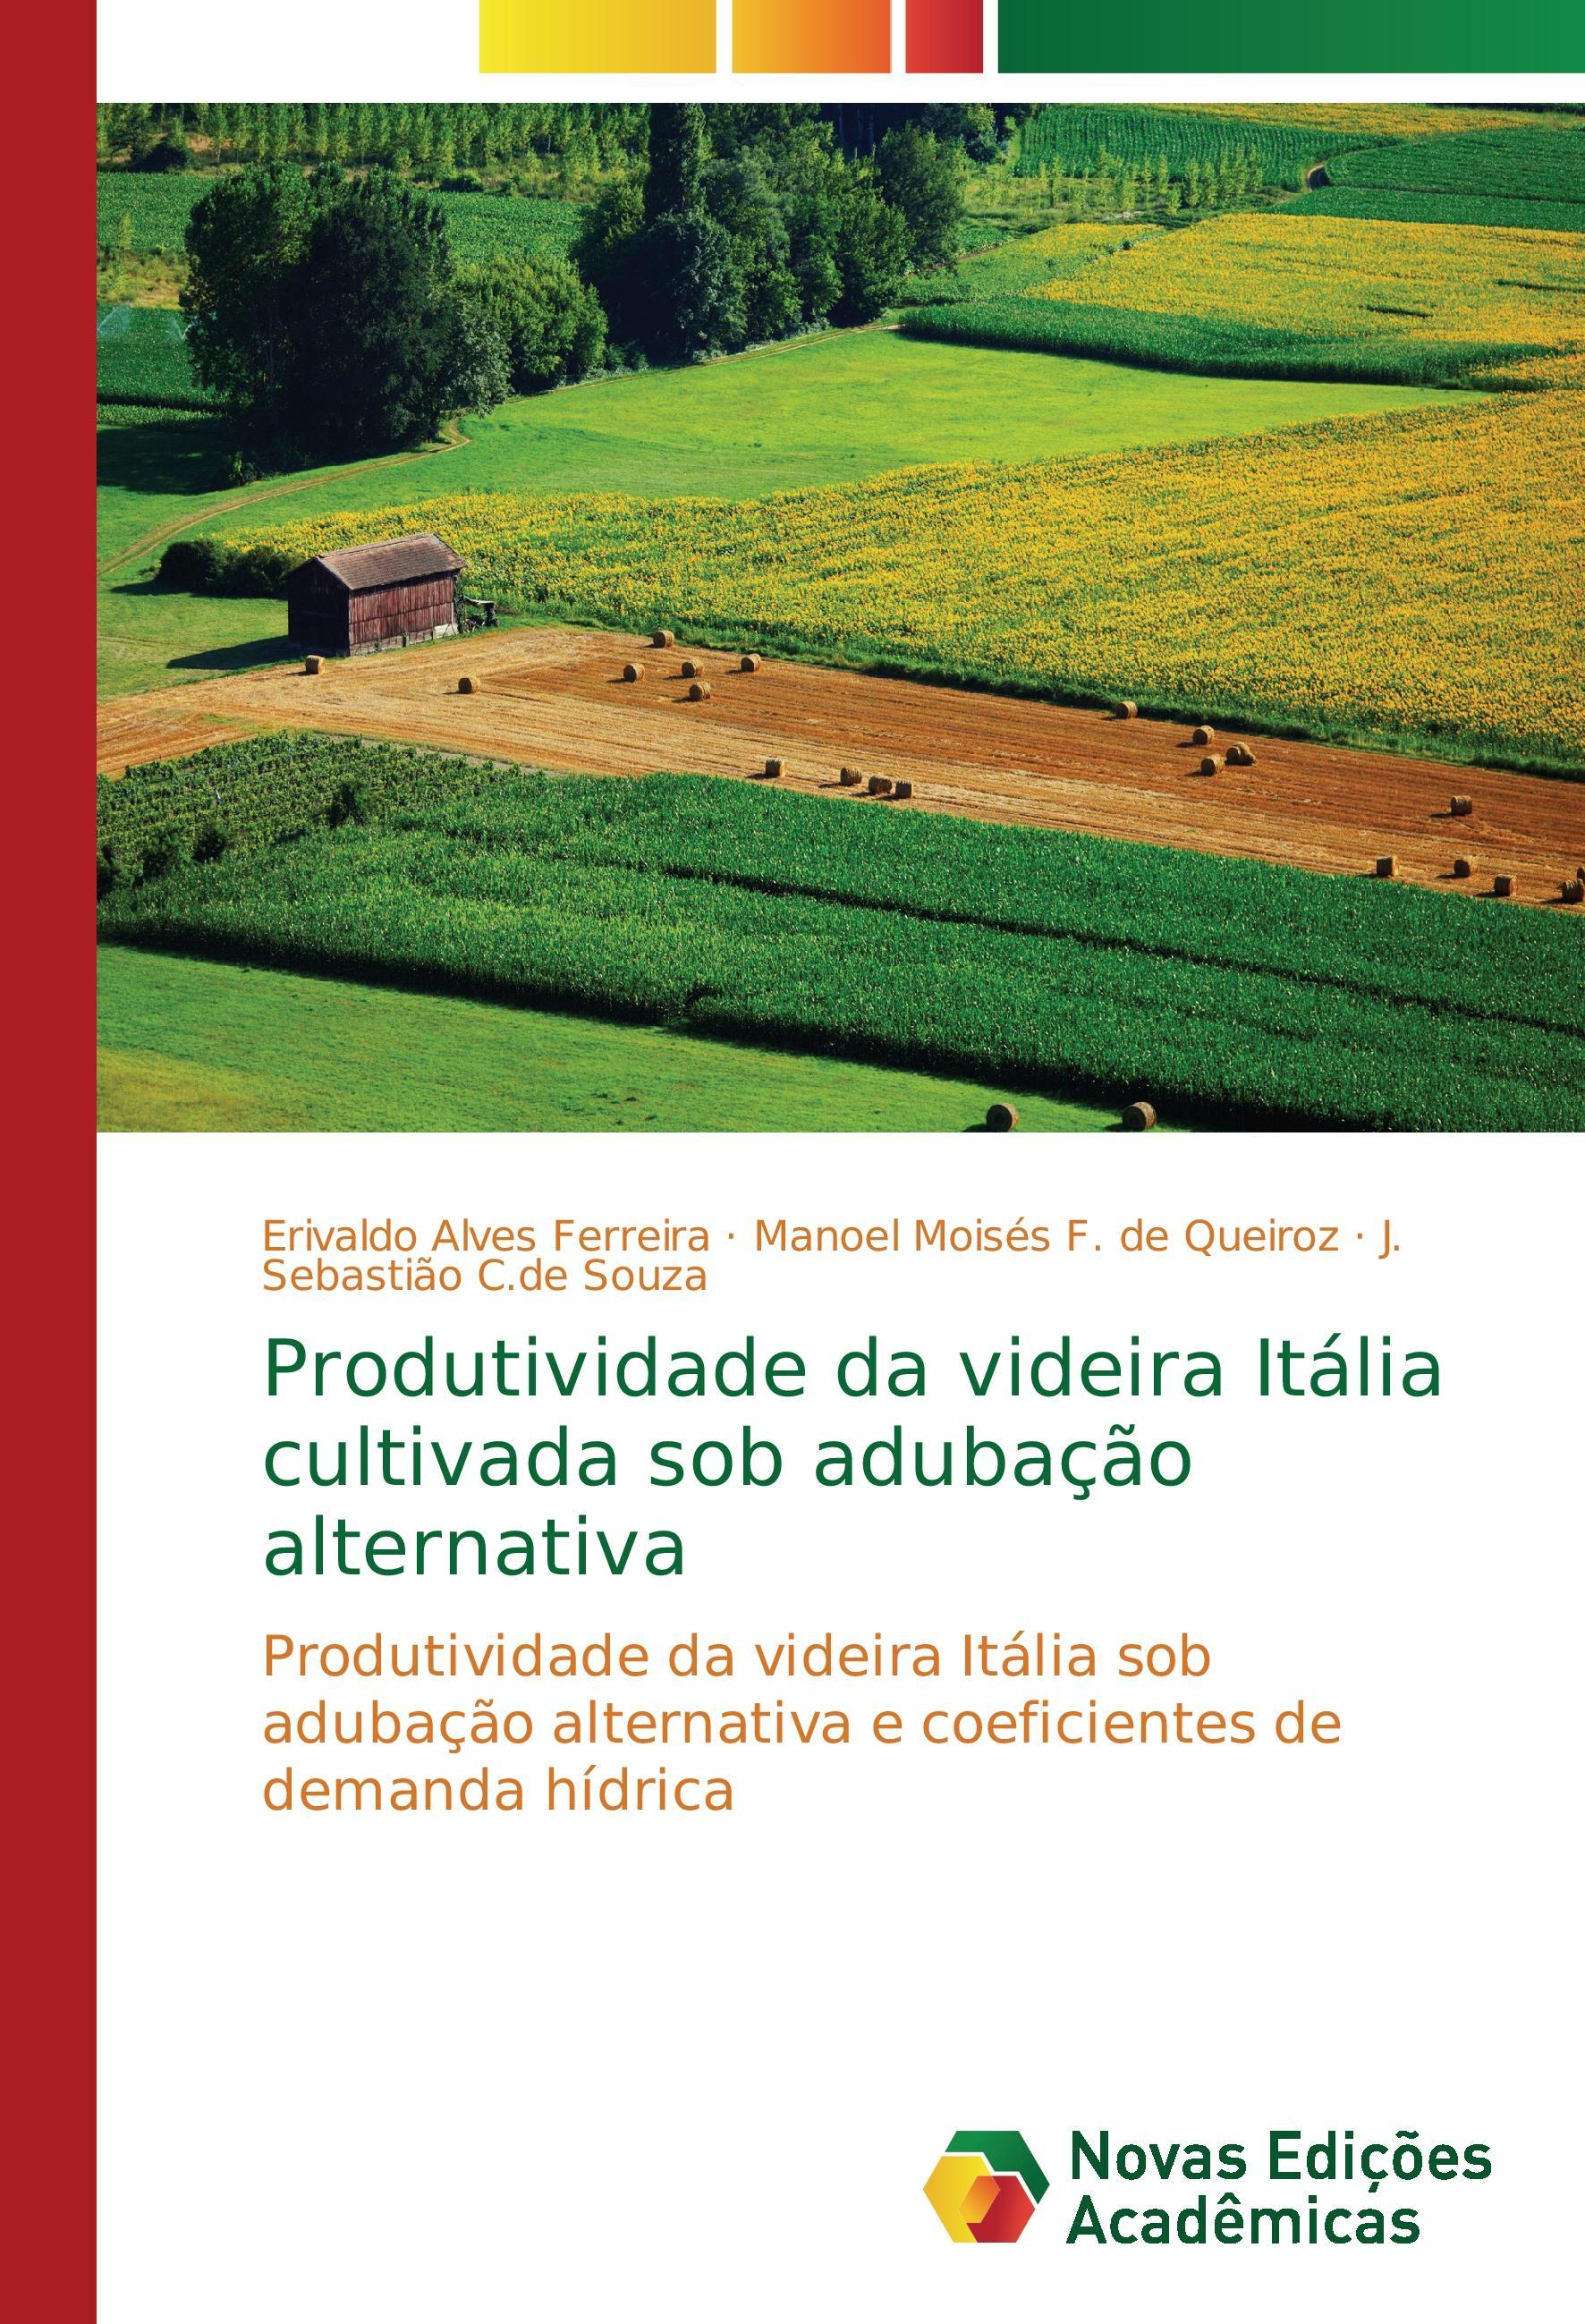 Produtividade da videira Itália cultivada sob adubação alternativa - Alves Ferreira, Erivaldo F. de Queiroz, Manoel Moisés C.de Souza, J. Sebastião